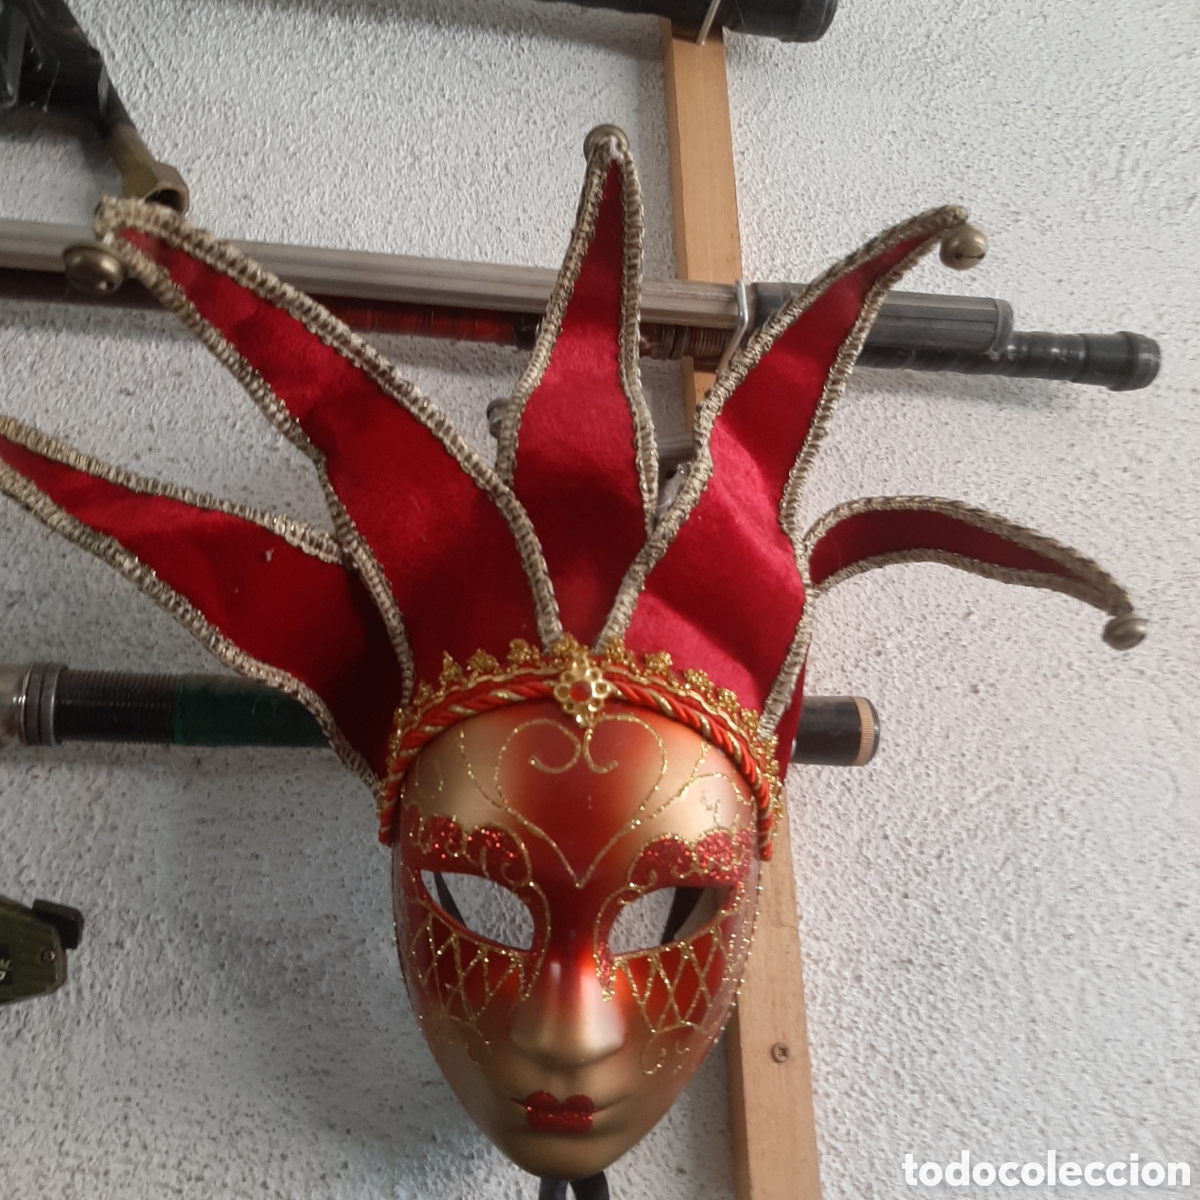 mascara carnaval venecia mask handmade - Compra venta en todocoleccion